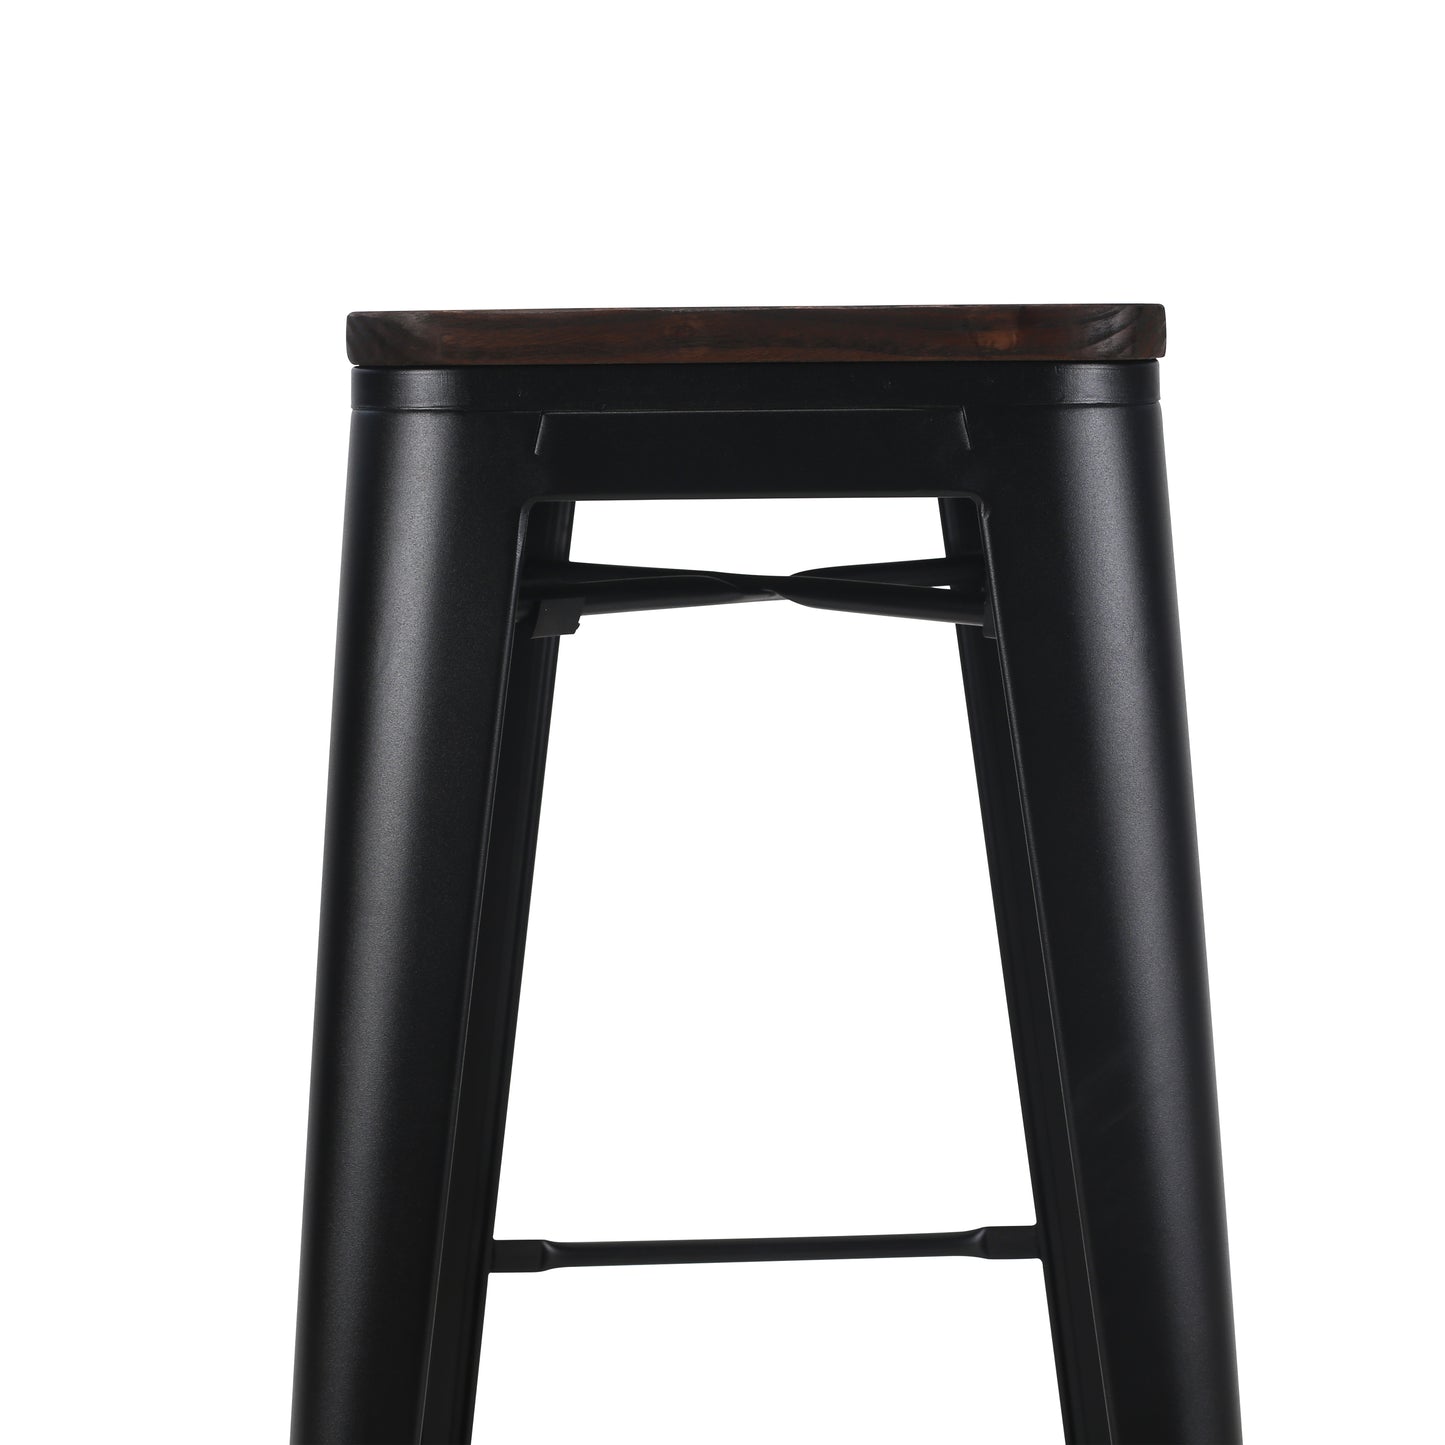 Tabouret de bar en métal noir mat style industriel et assise en bois foncé - Hauteur 76 cm